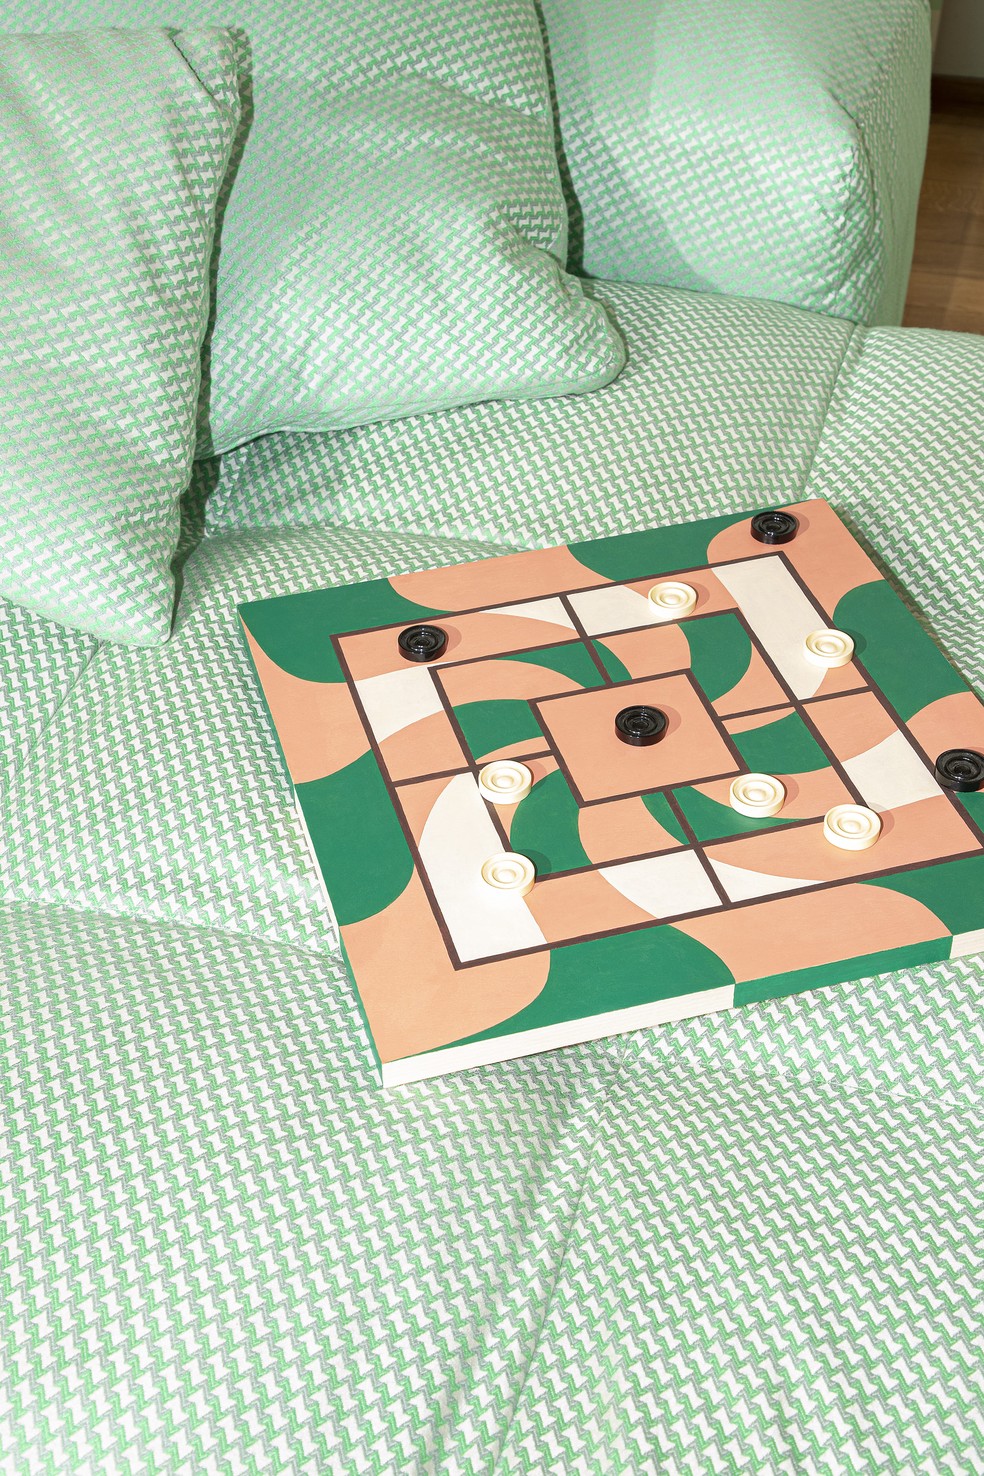 Jogos de tabuleiro fazem parte da estética da residência — Foto: Beppe Brancato